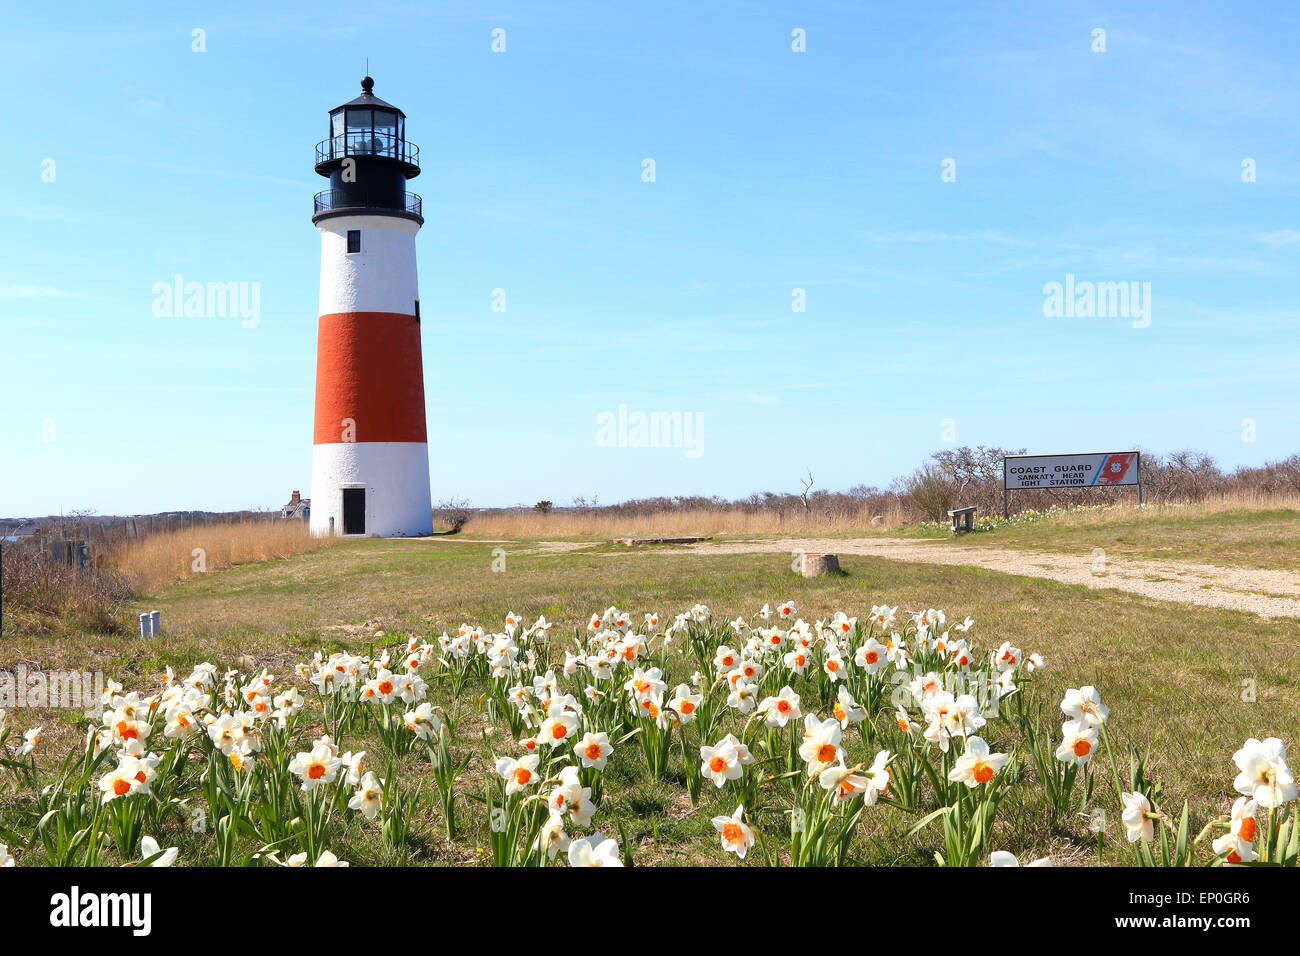 Phare de Nantucket, Light House, et des jonquilles à Sankaty head Siasconset, Nantucket Island, New England, Massachusetts, USA. Banque D'Images